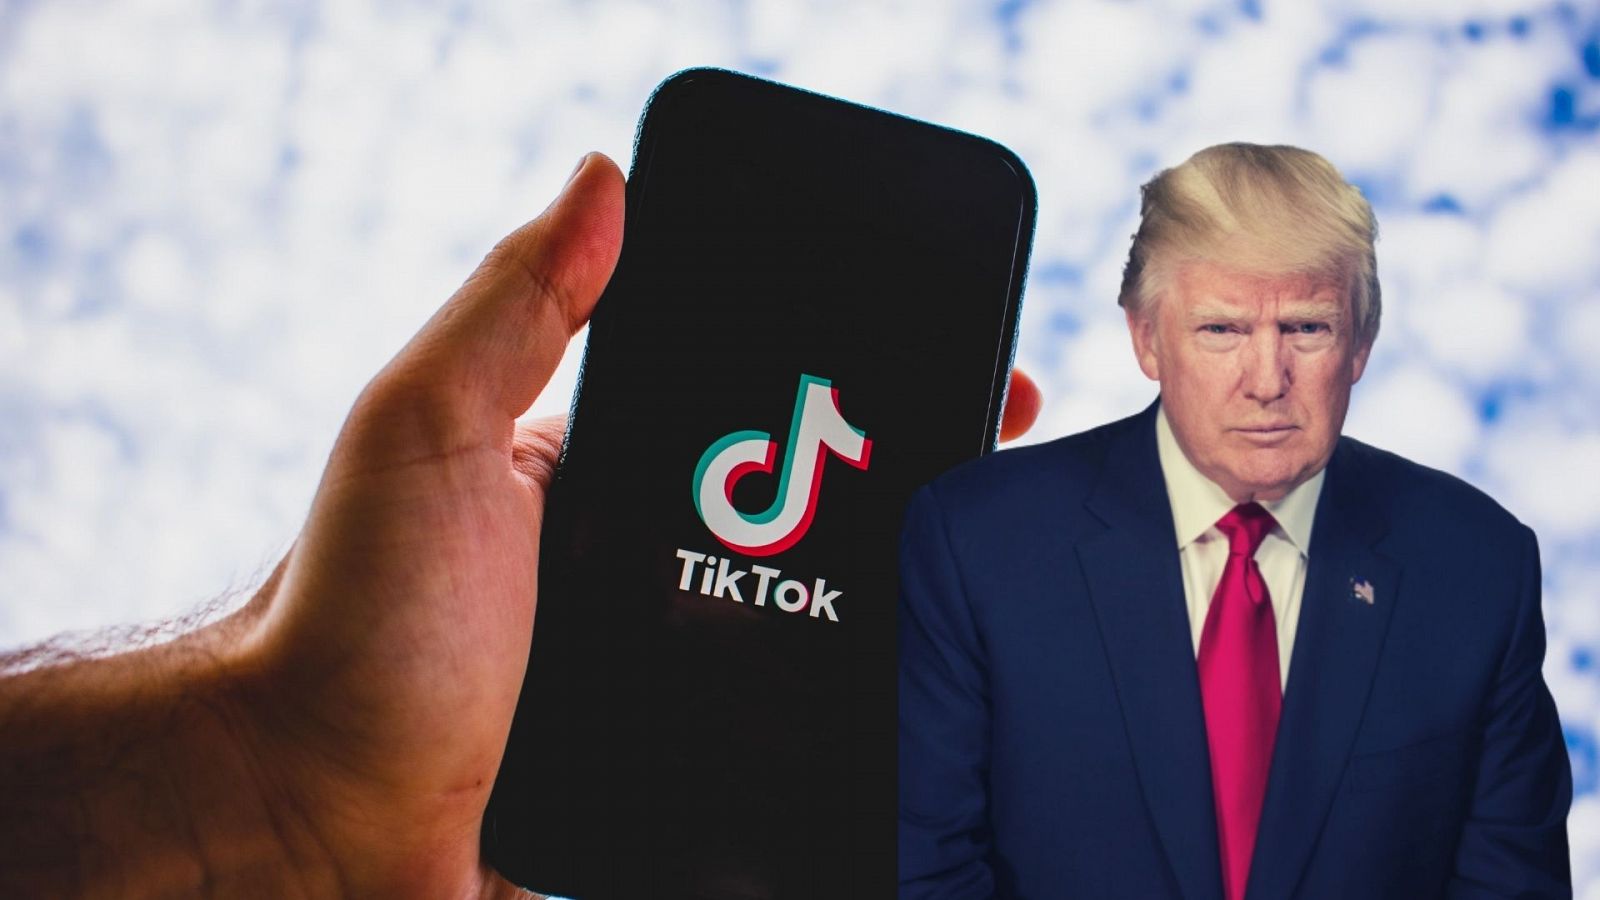 Las mañanas de RNE con Pepa Fernández - La polémica entre Trump y Tik Tok, la red social que triunfa en la generación Z - Escuchar ahora